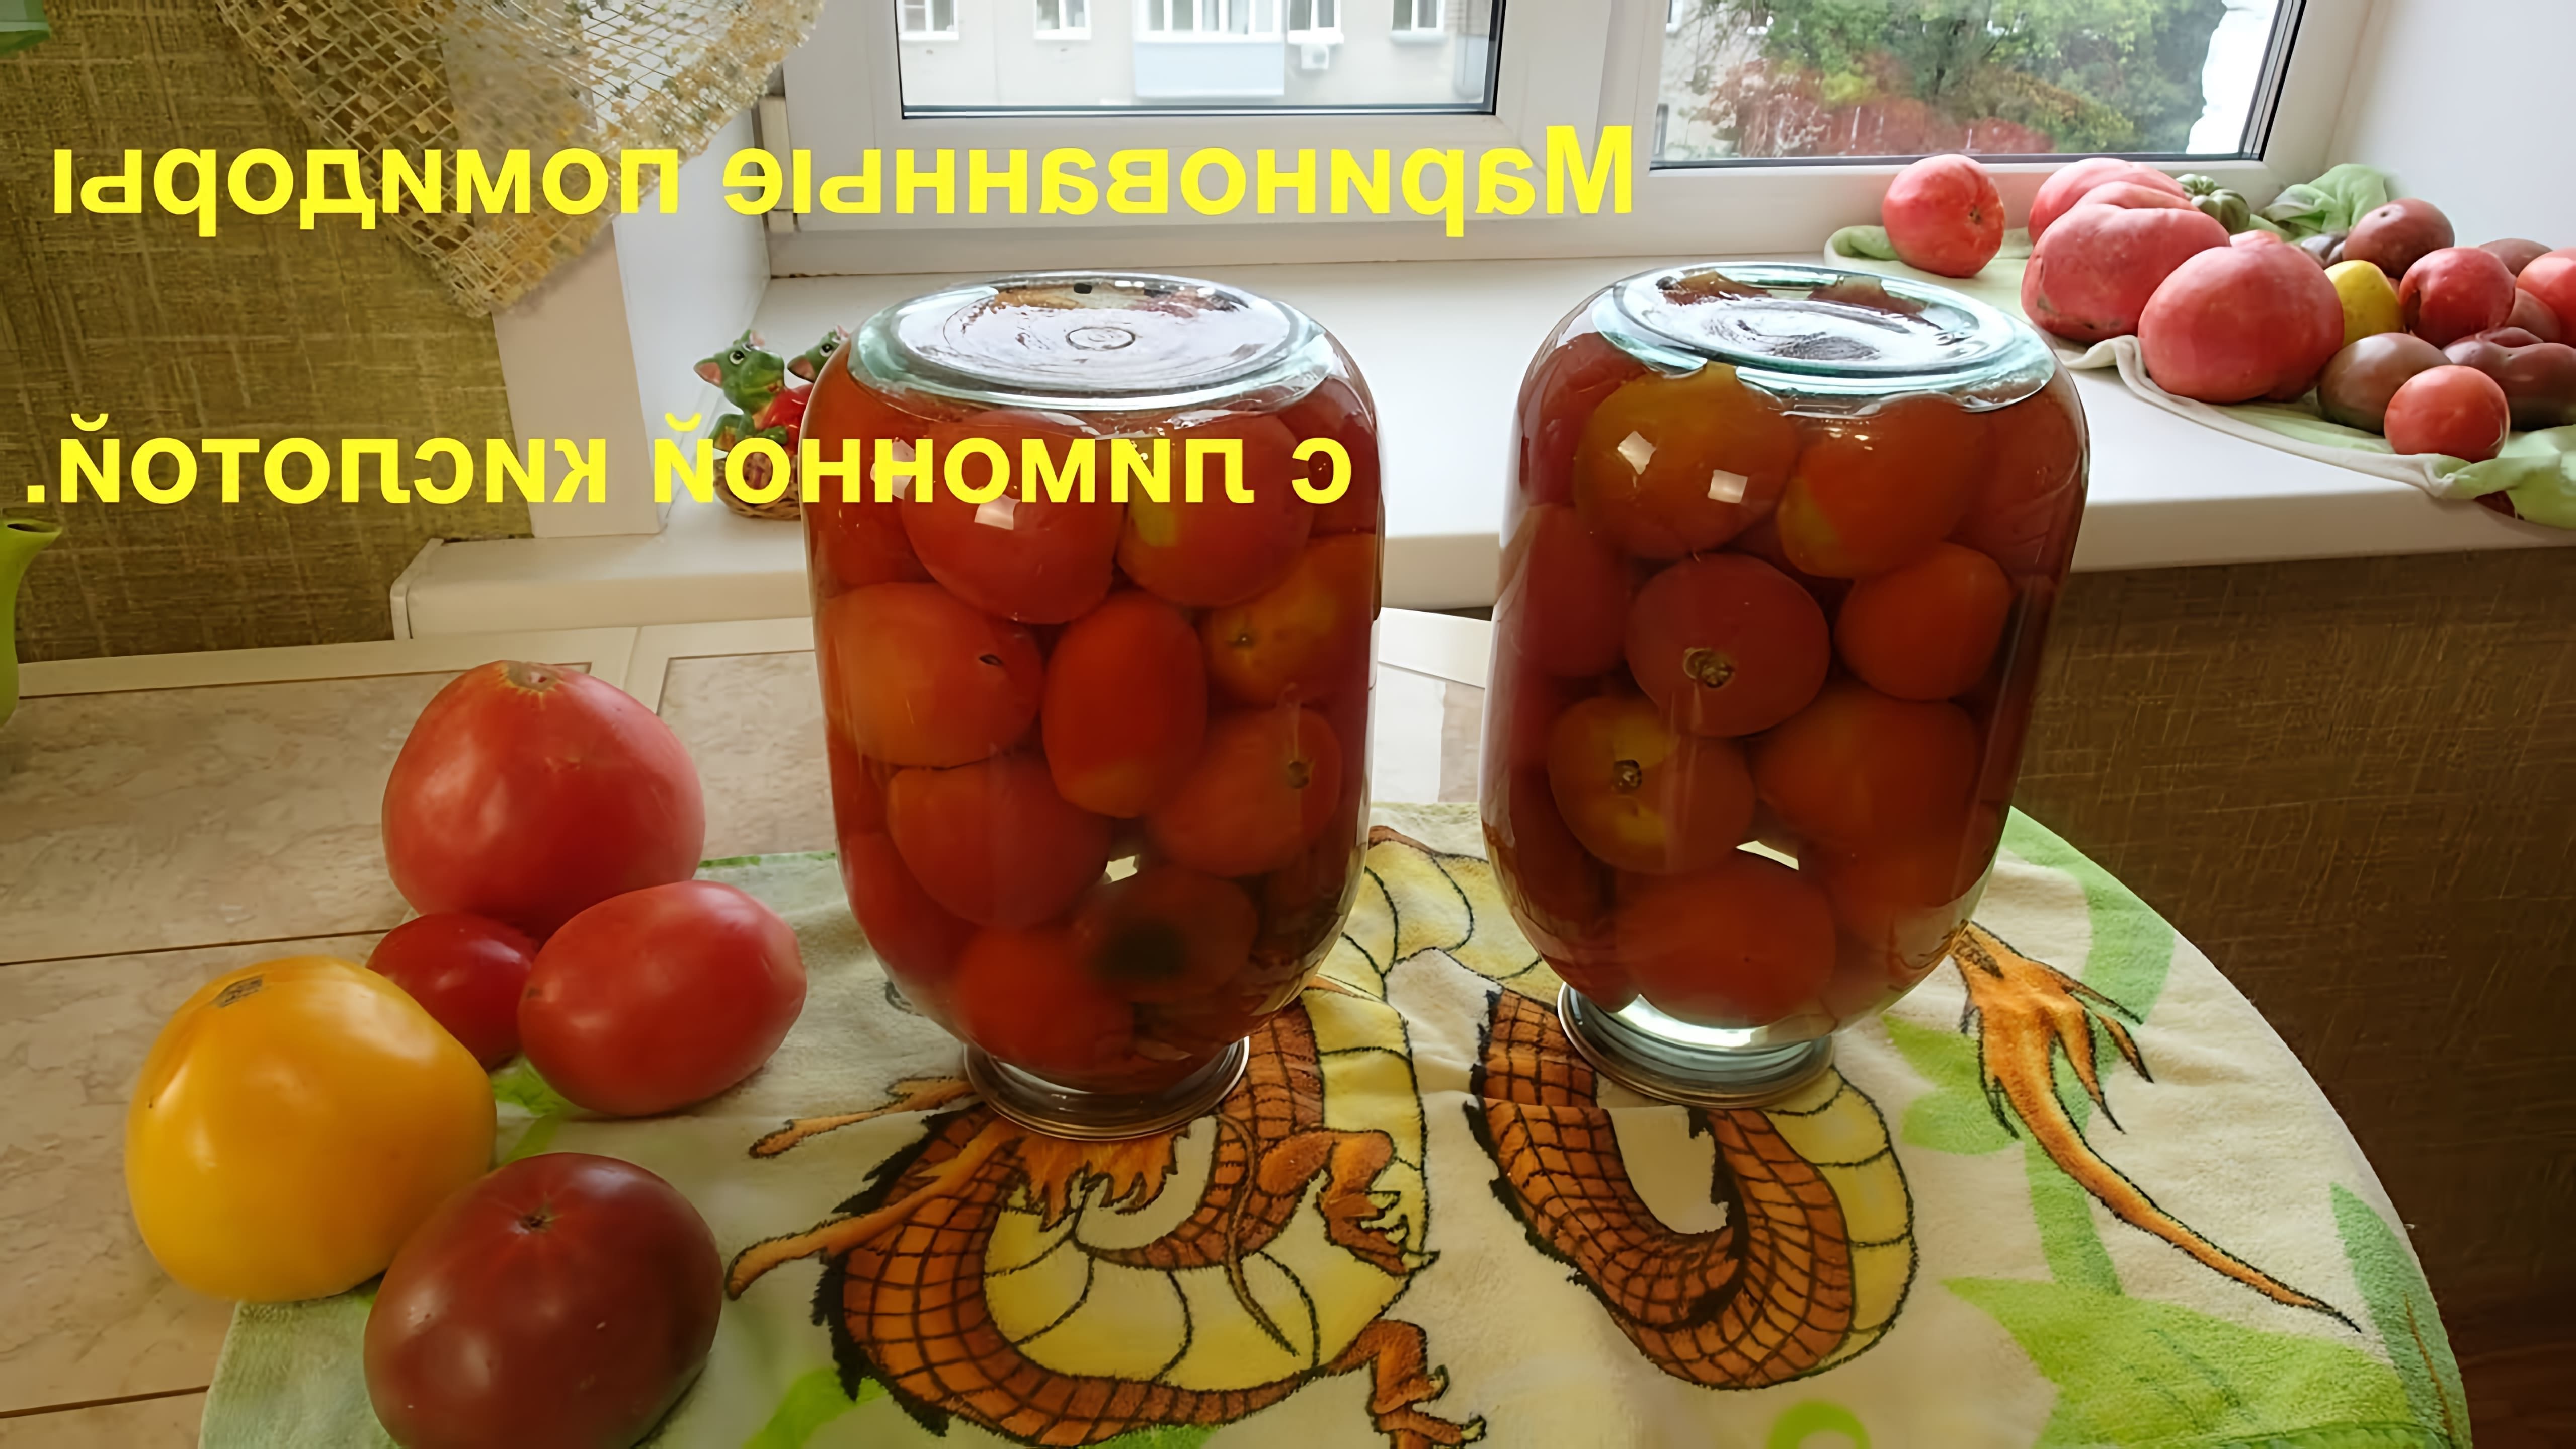 В этом видео демонстрируется процесс маринования помидоров с использованием лимонной кислоты вместо уксуса